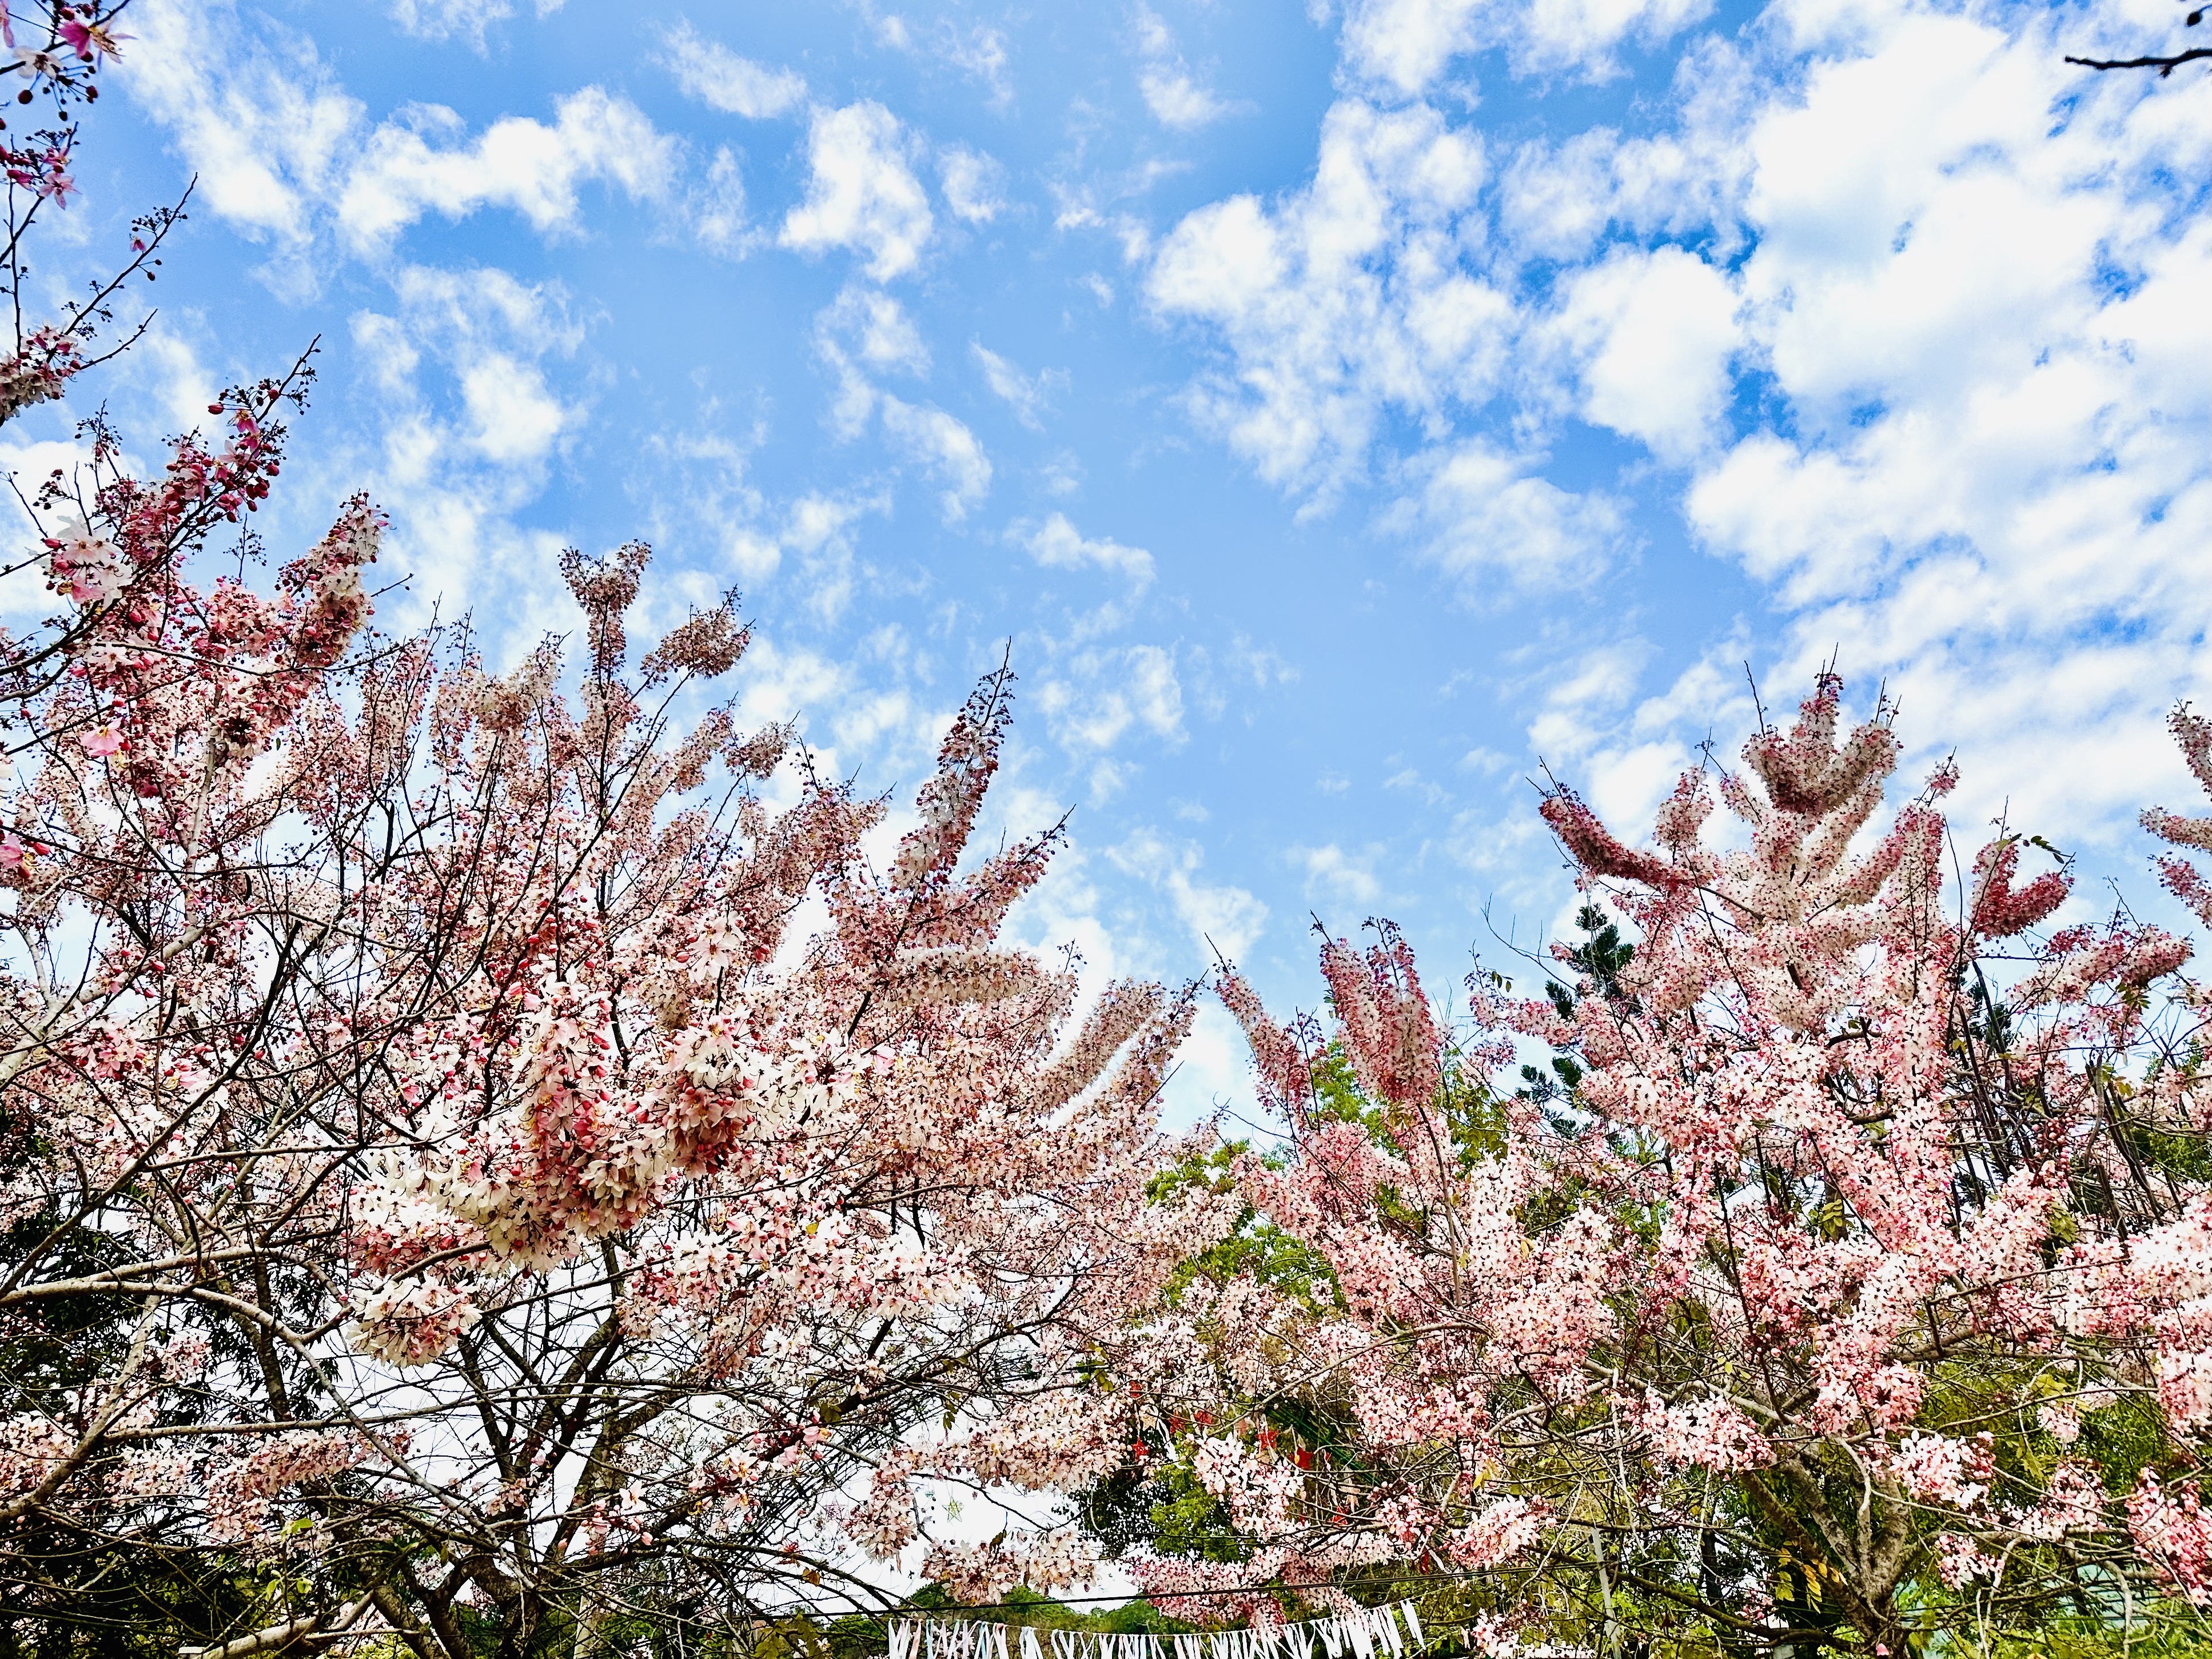 台南玉山宝光圣堂300多棵花旗木已满开，即日起花期将为期一个月。记者李文德／摄影